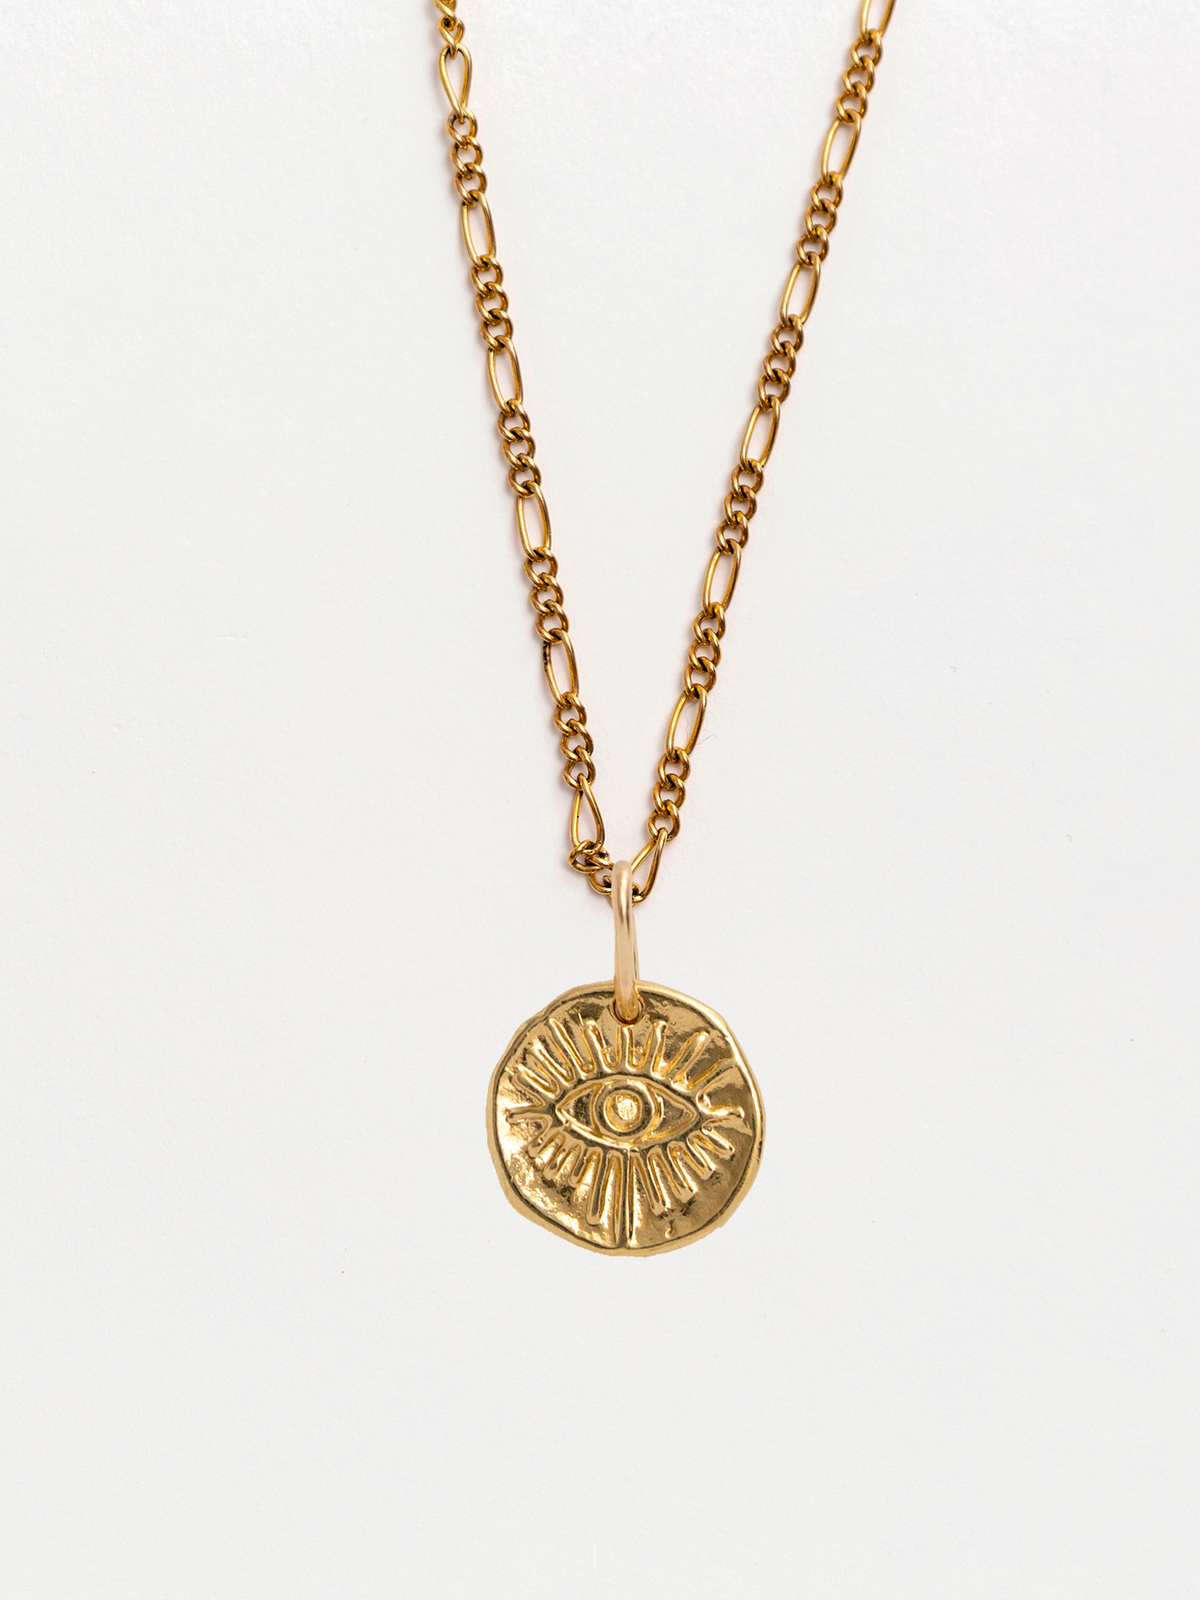 Mati Small Gold Pendant Necklace